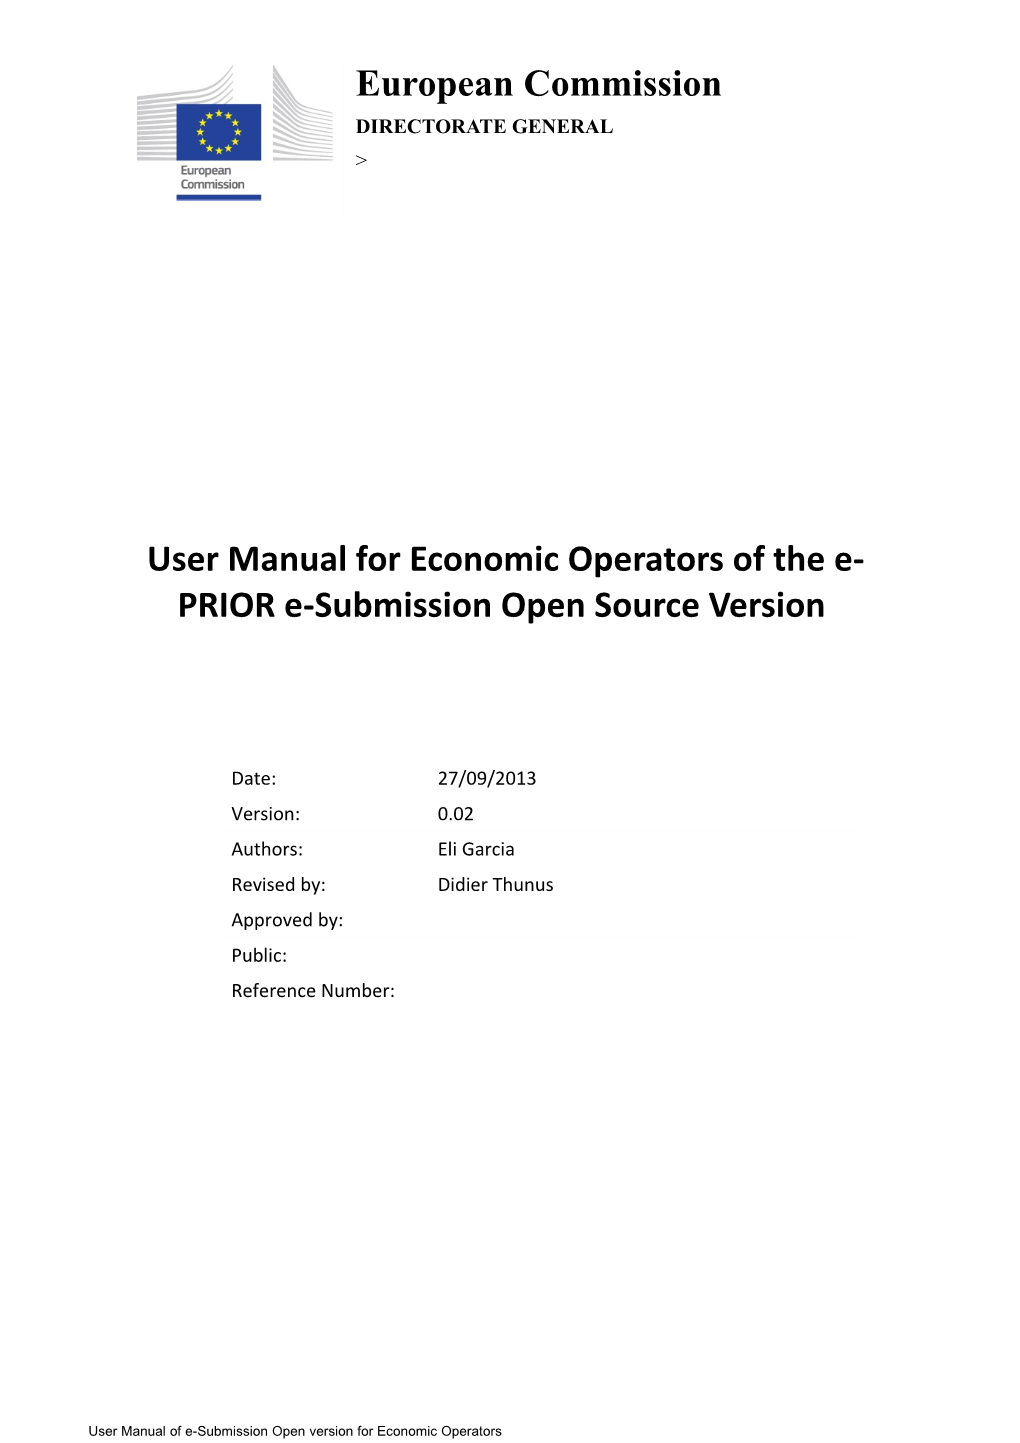 User Manual for Economic Operators of the E-PRIOR E-Submission Open Source Version